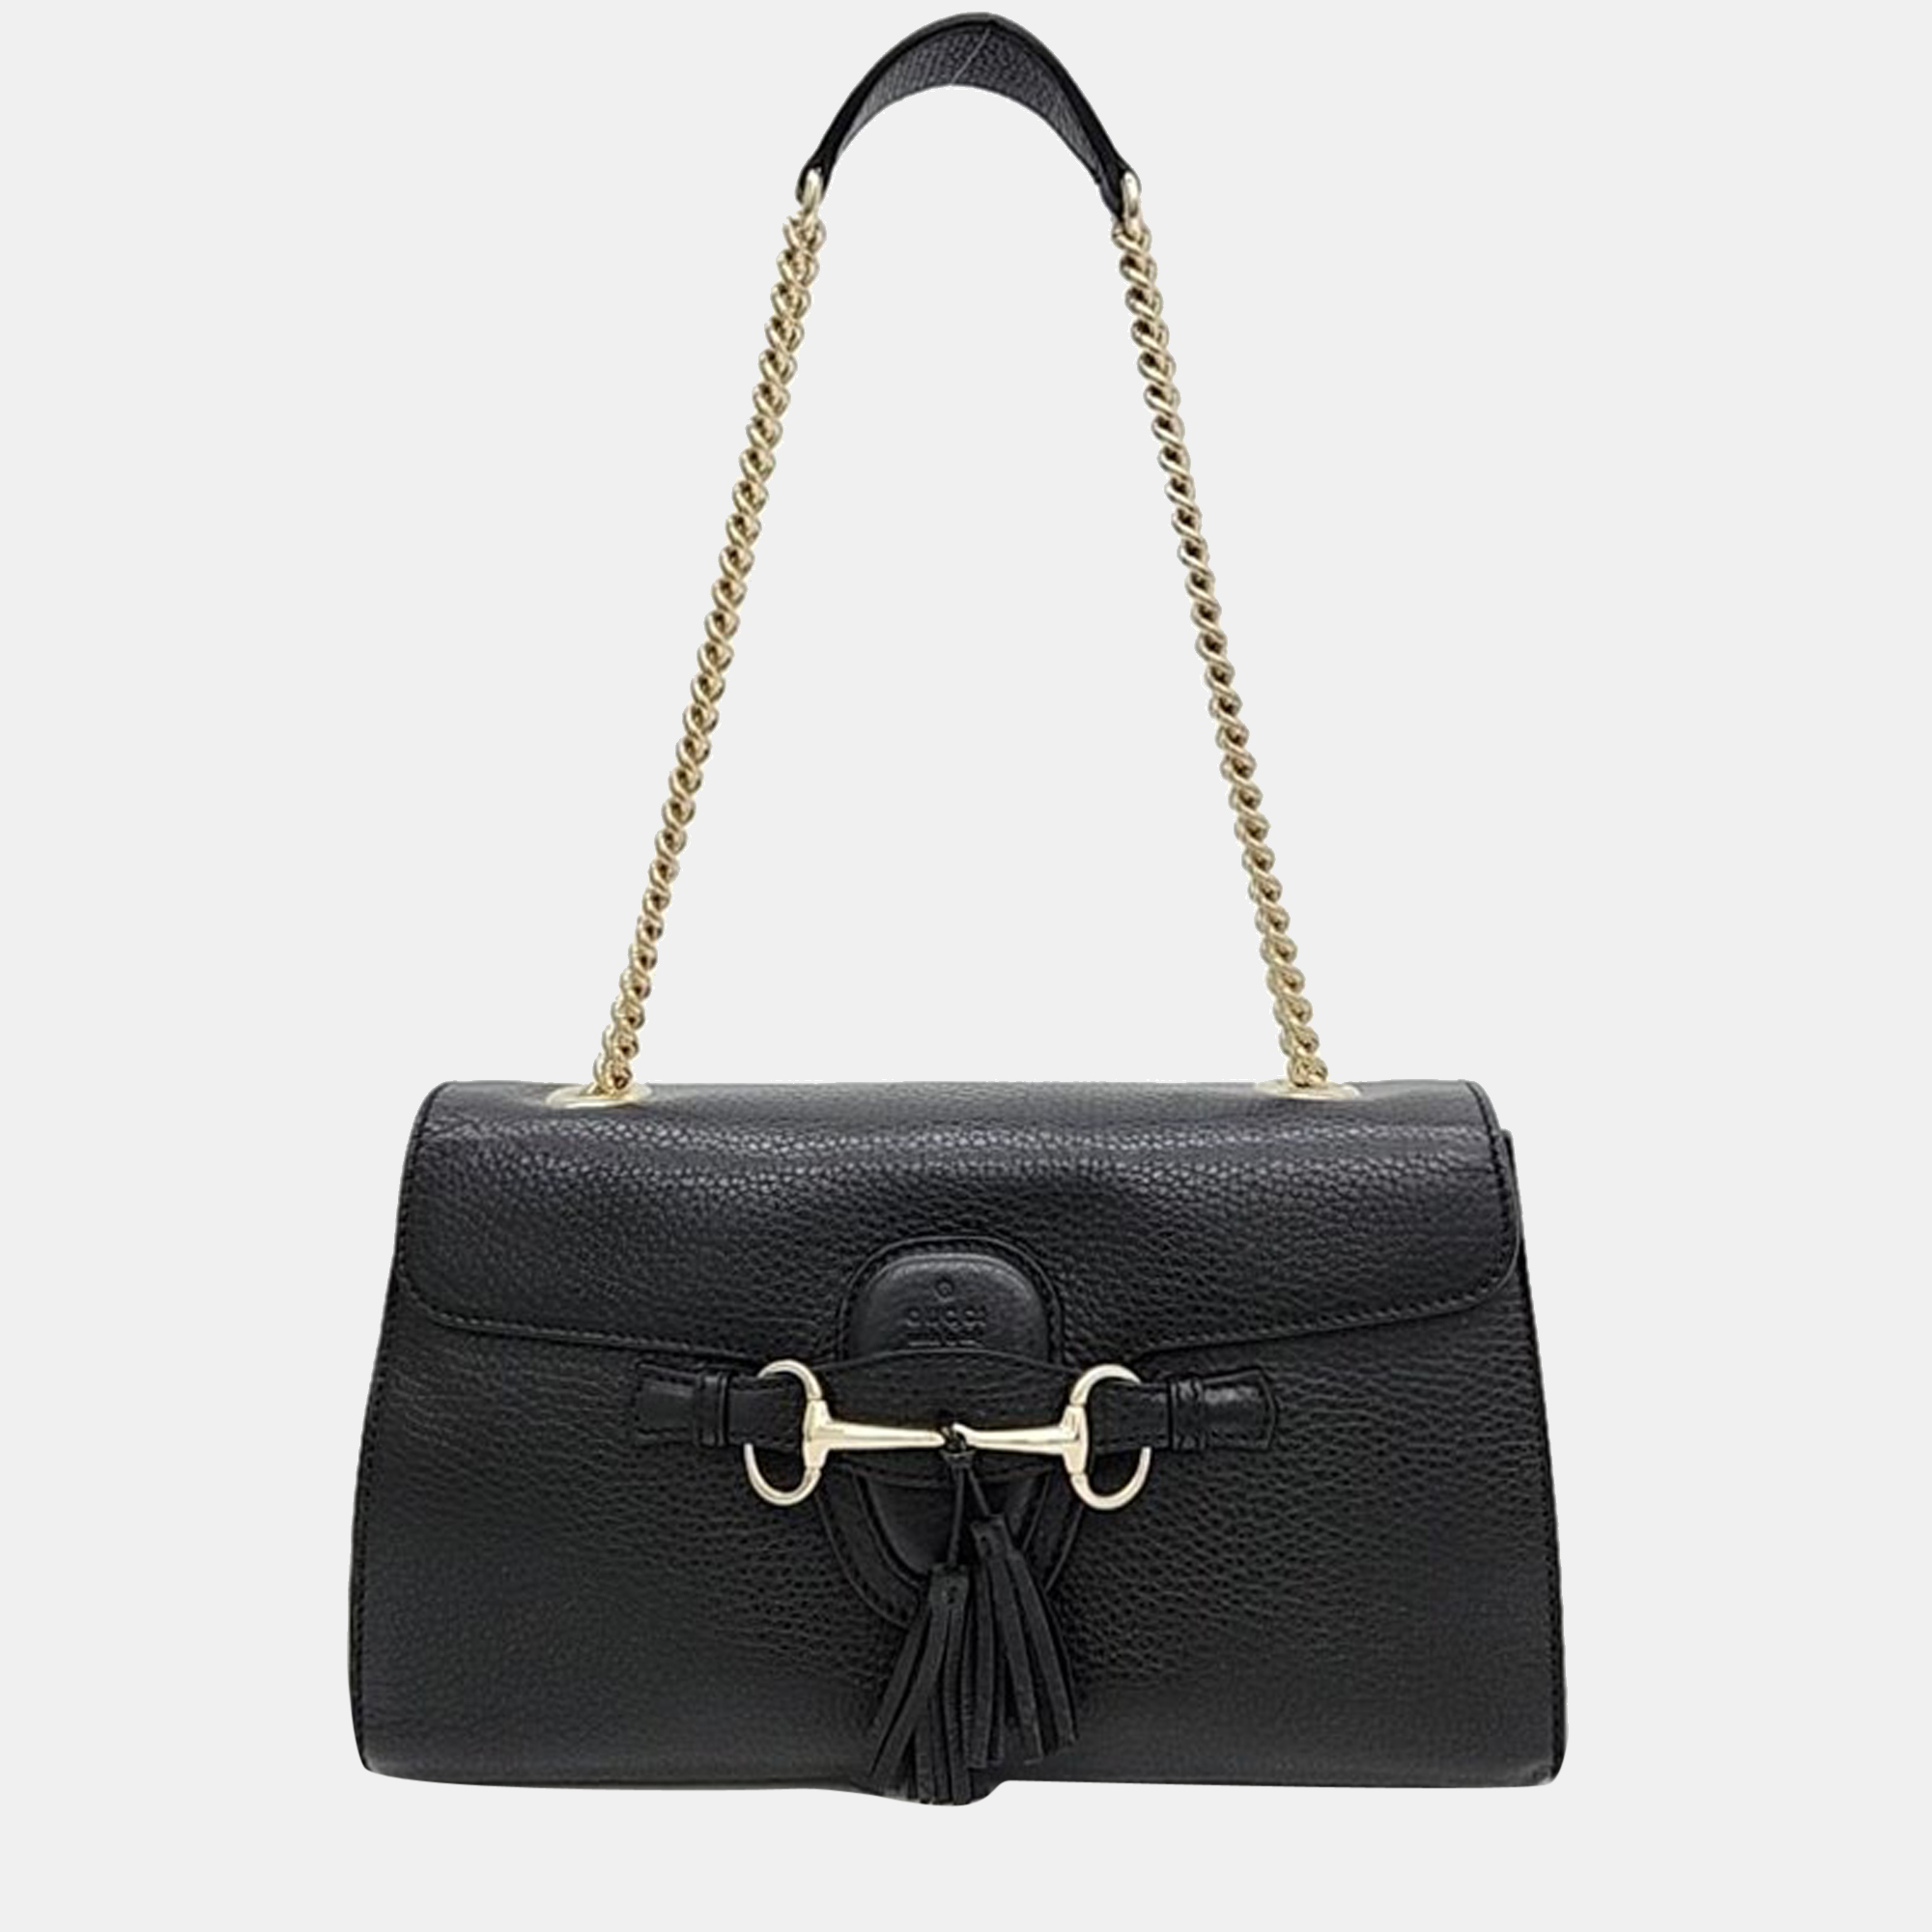 Gucci Black Leather Emily Shoulder Bag